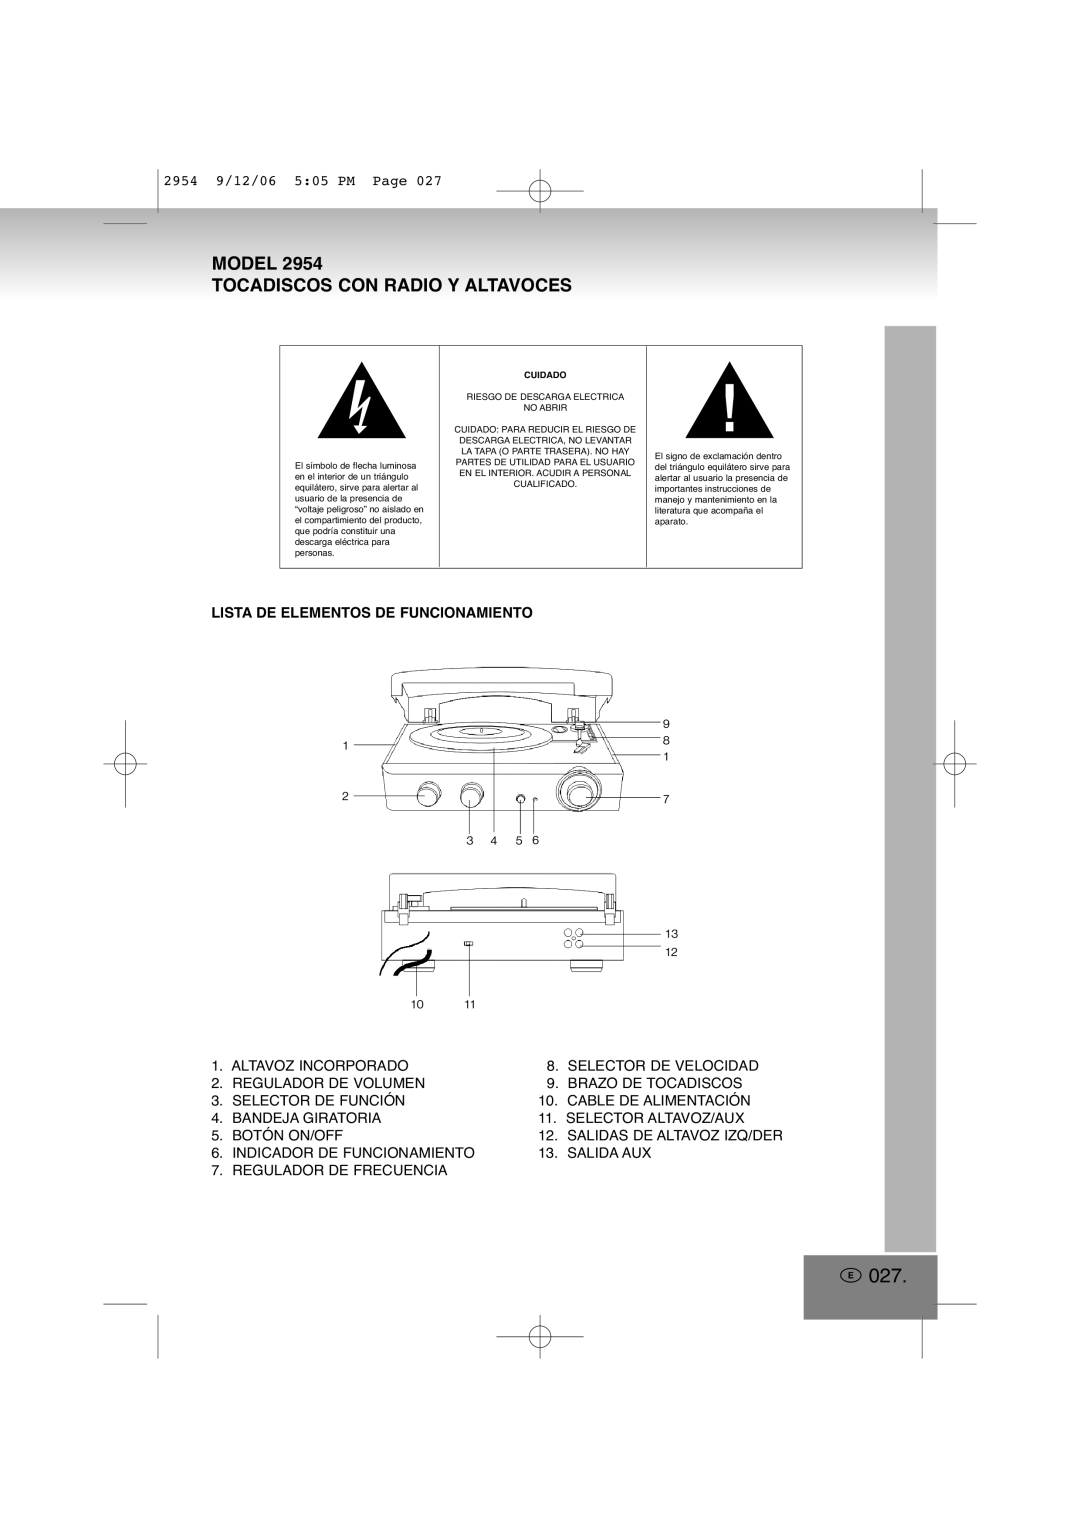 Elta 2954 manual E027, Model Tocadiscos Con Radio Y Altavoces, Lista De Elementos De Funcionamiento 